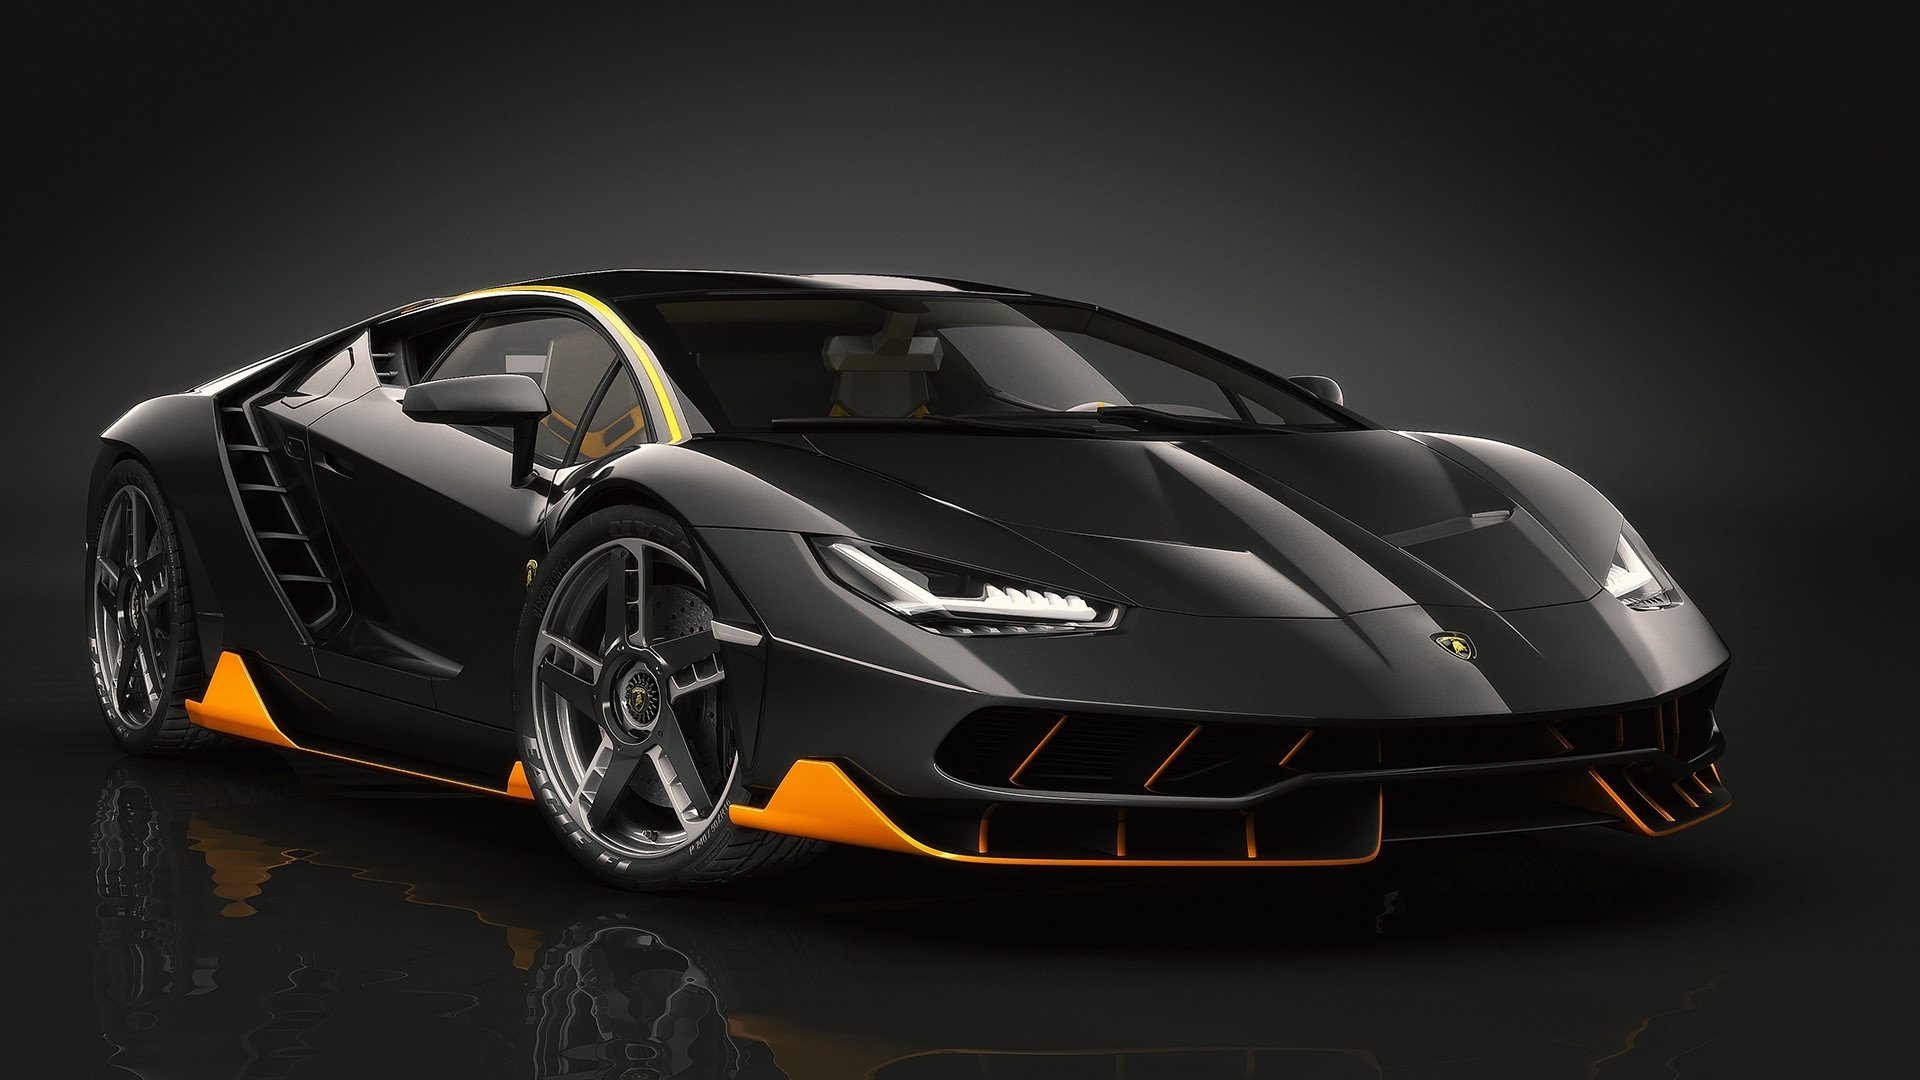 Lamborghini Centenario HD Wallpaper | Background Image | 1920x1080